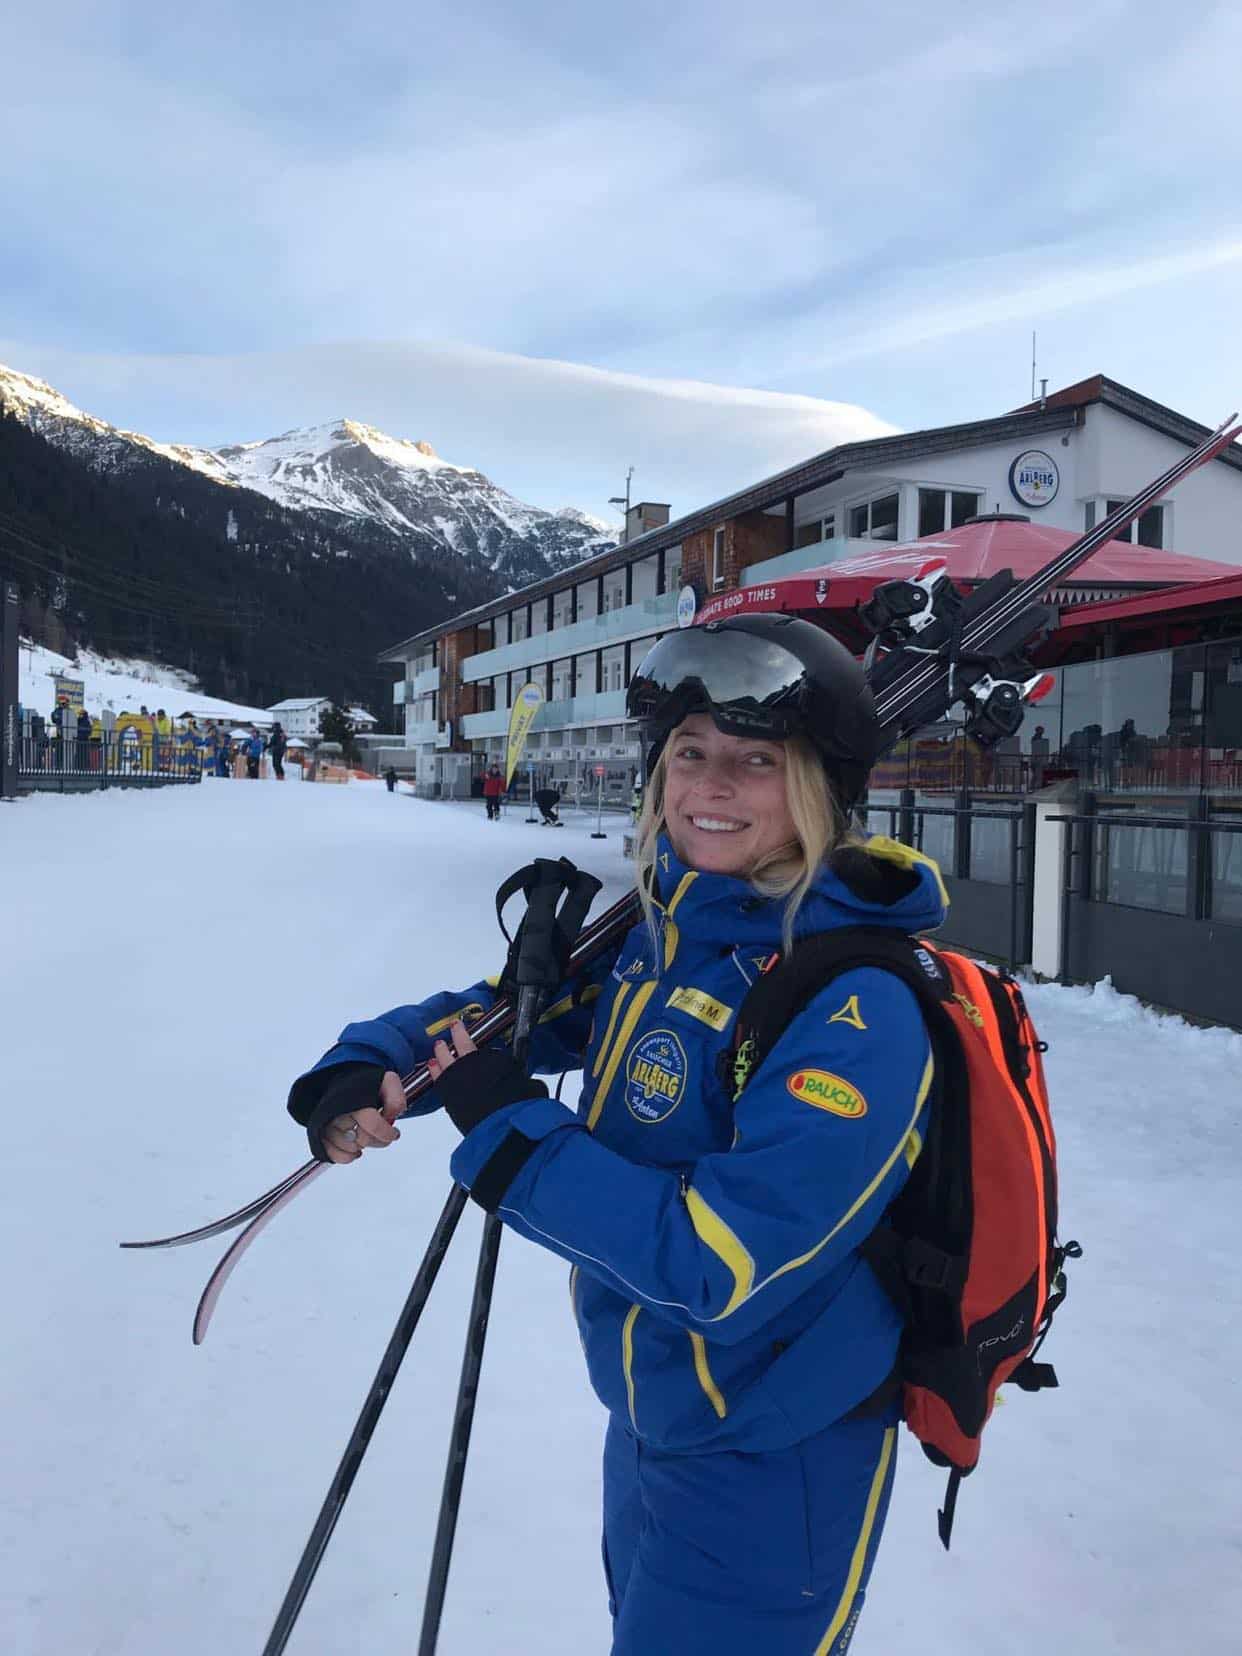 Caroline skilæreruniform i St. Anton